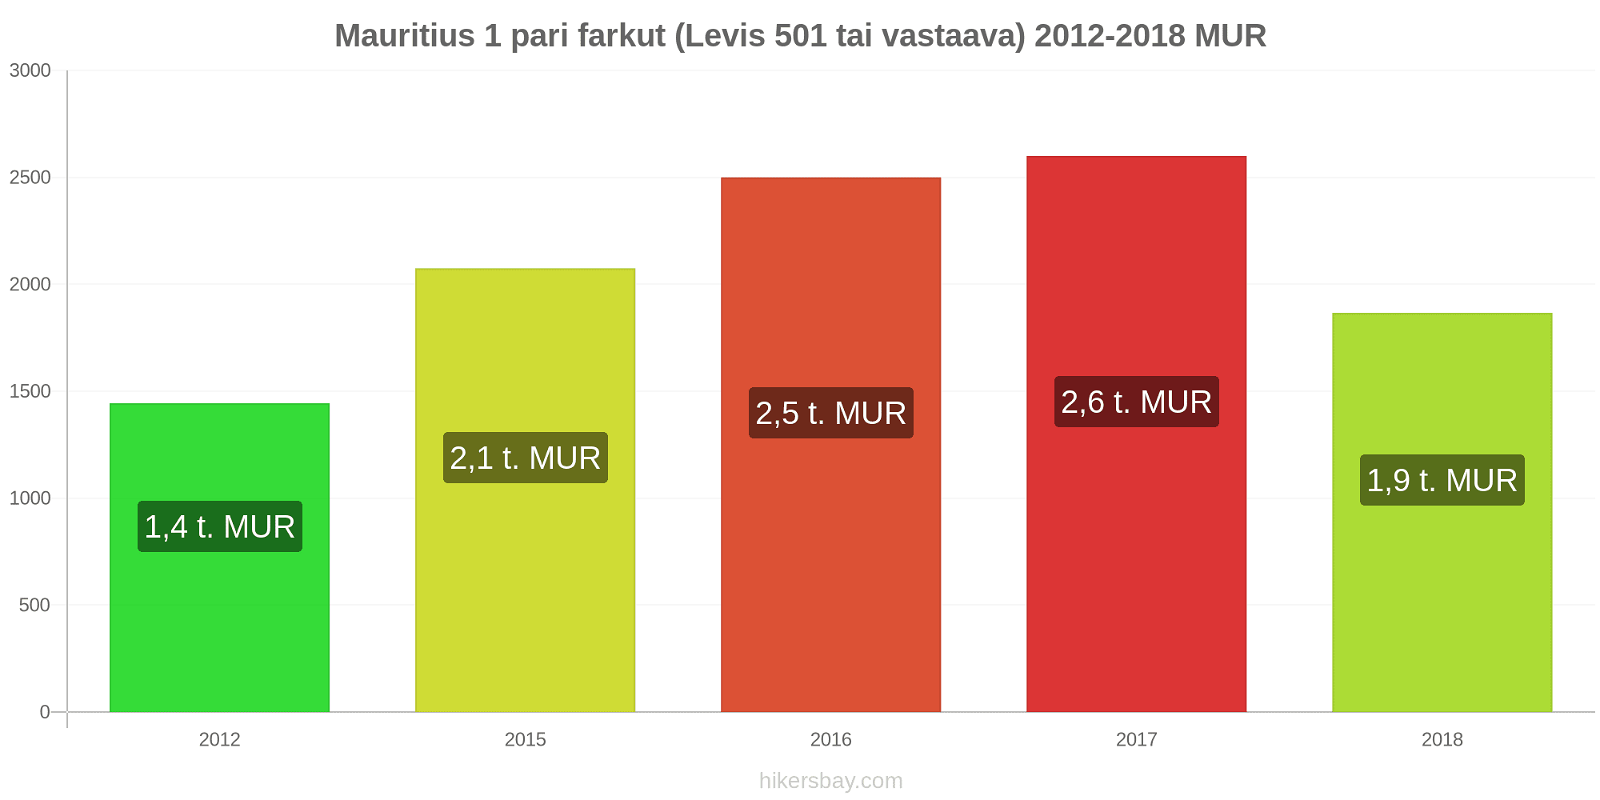 Mauritius hintojen muutokset 1 pari farkut (Levis 501 tai vastaava) hikersbay.com